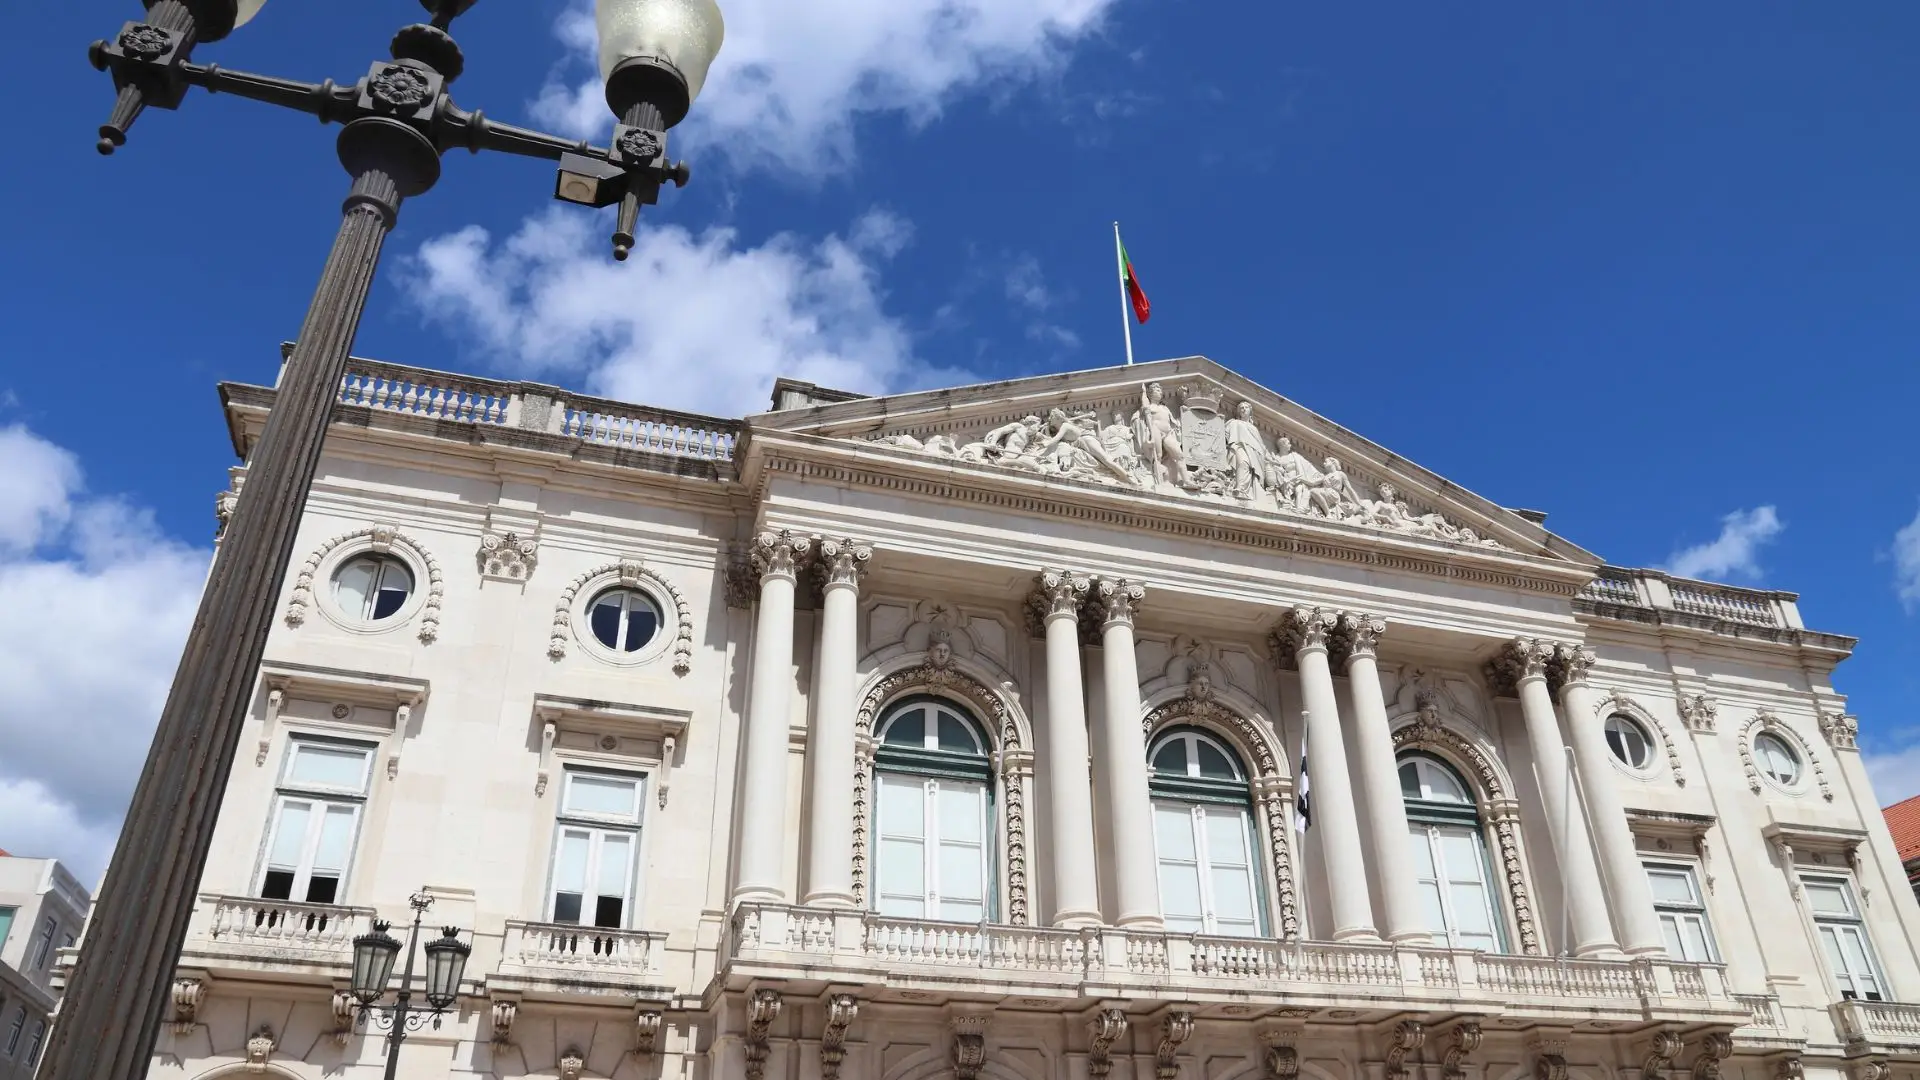 Seis arguidos no caso que motivou buscas na Câmara de Lisboa